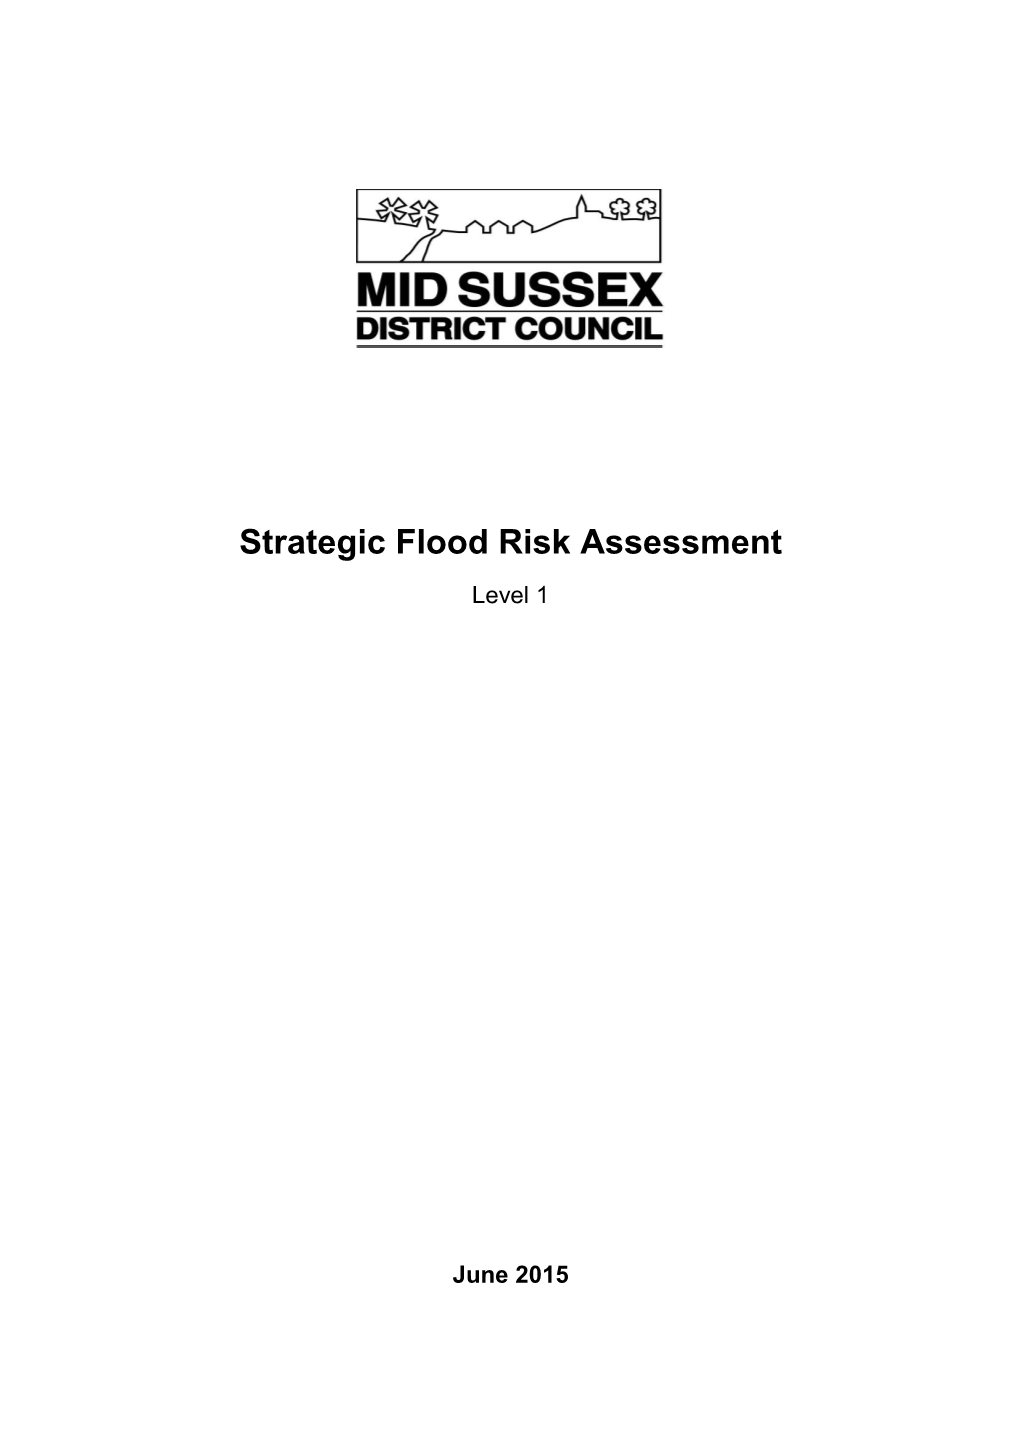 Strategic Flood Risk Assessment Level 1